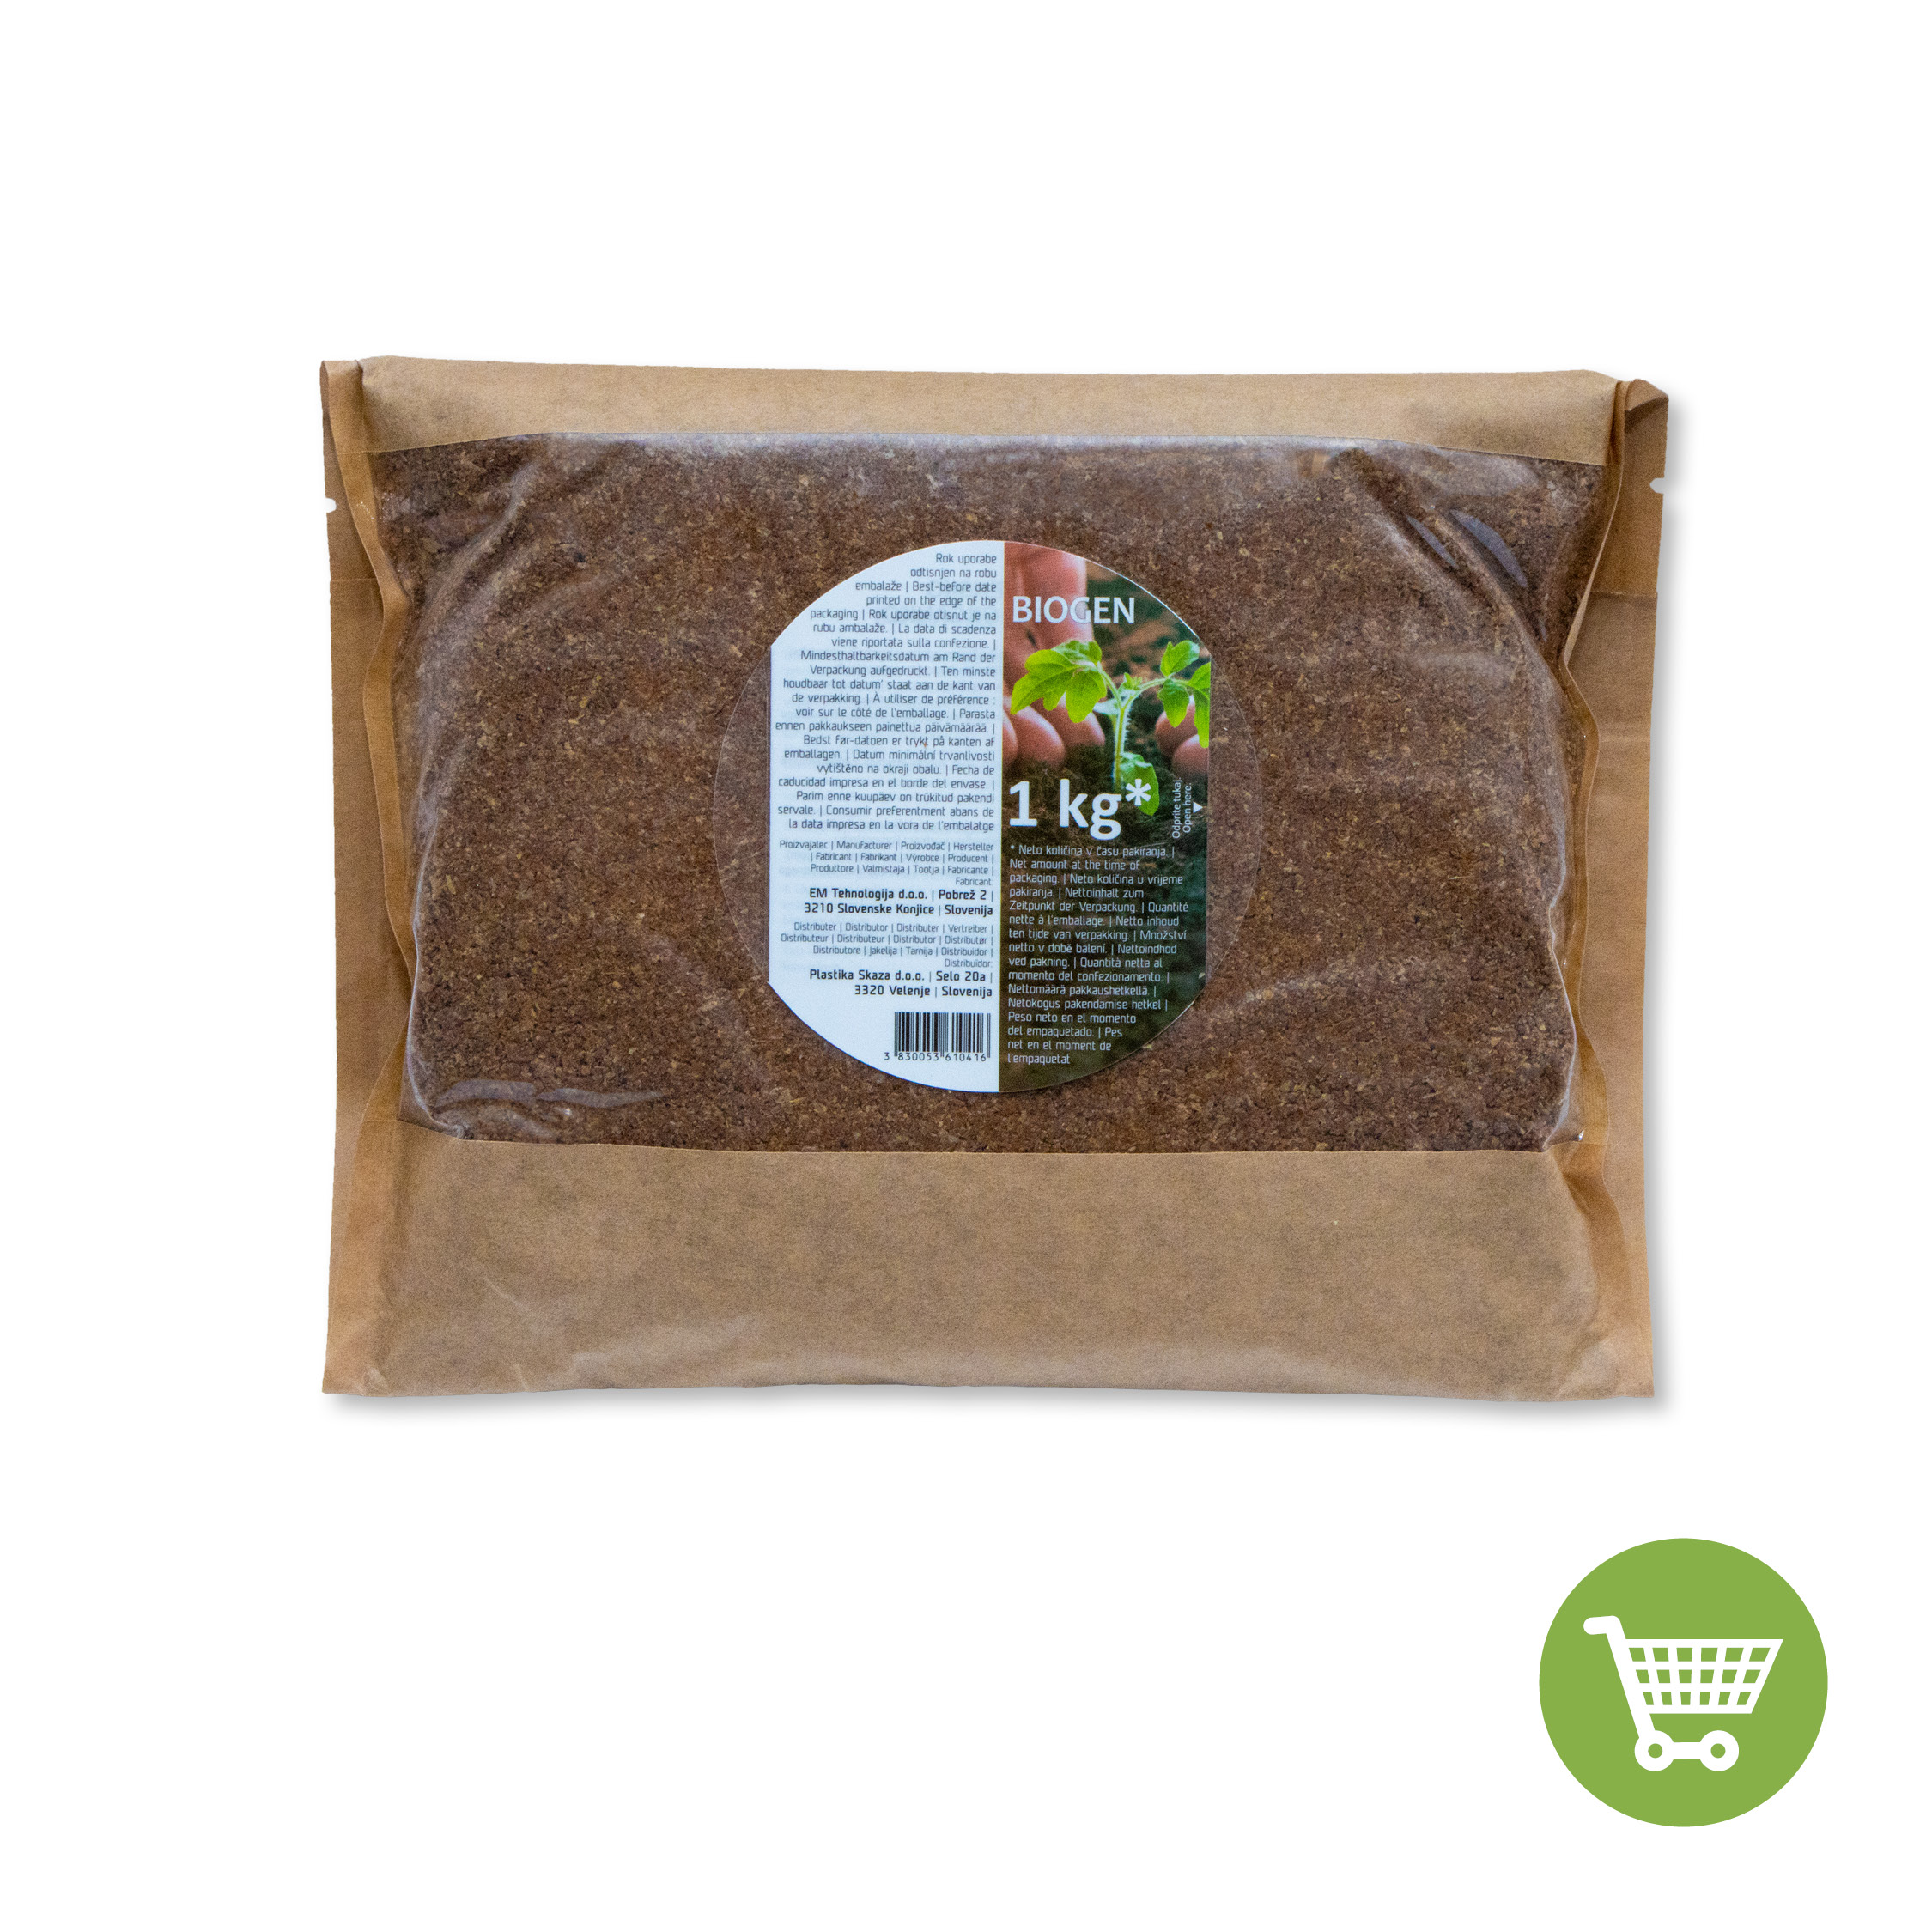 Bokashi Organko posip (1 kg), Biogen za fermentiranje in pripravo kompostne osnove